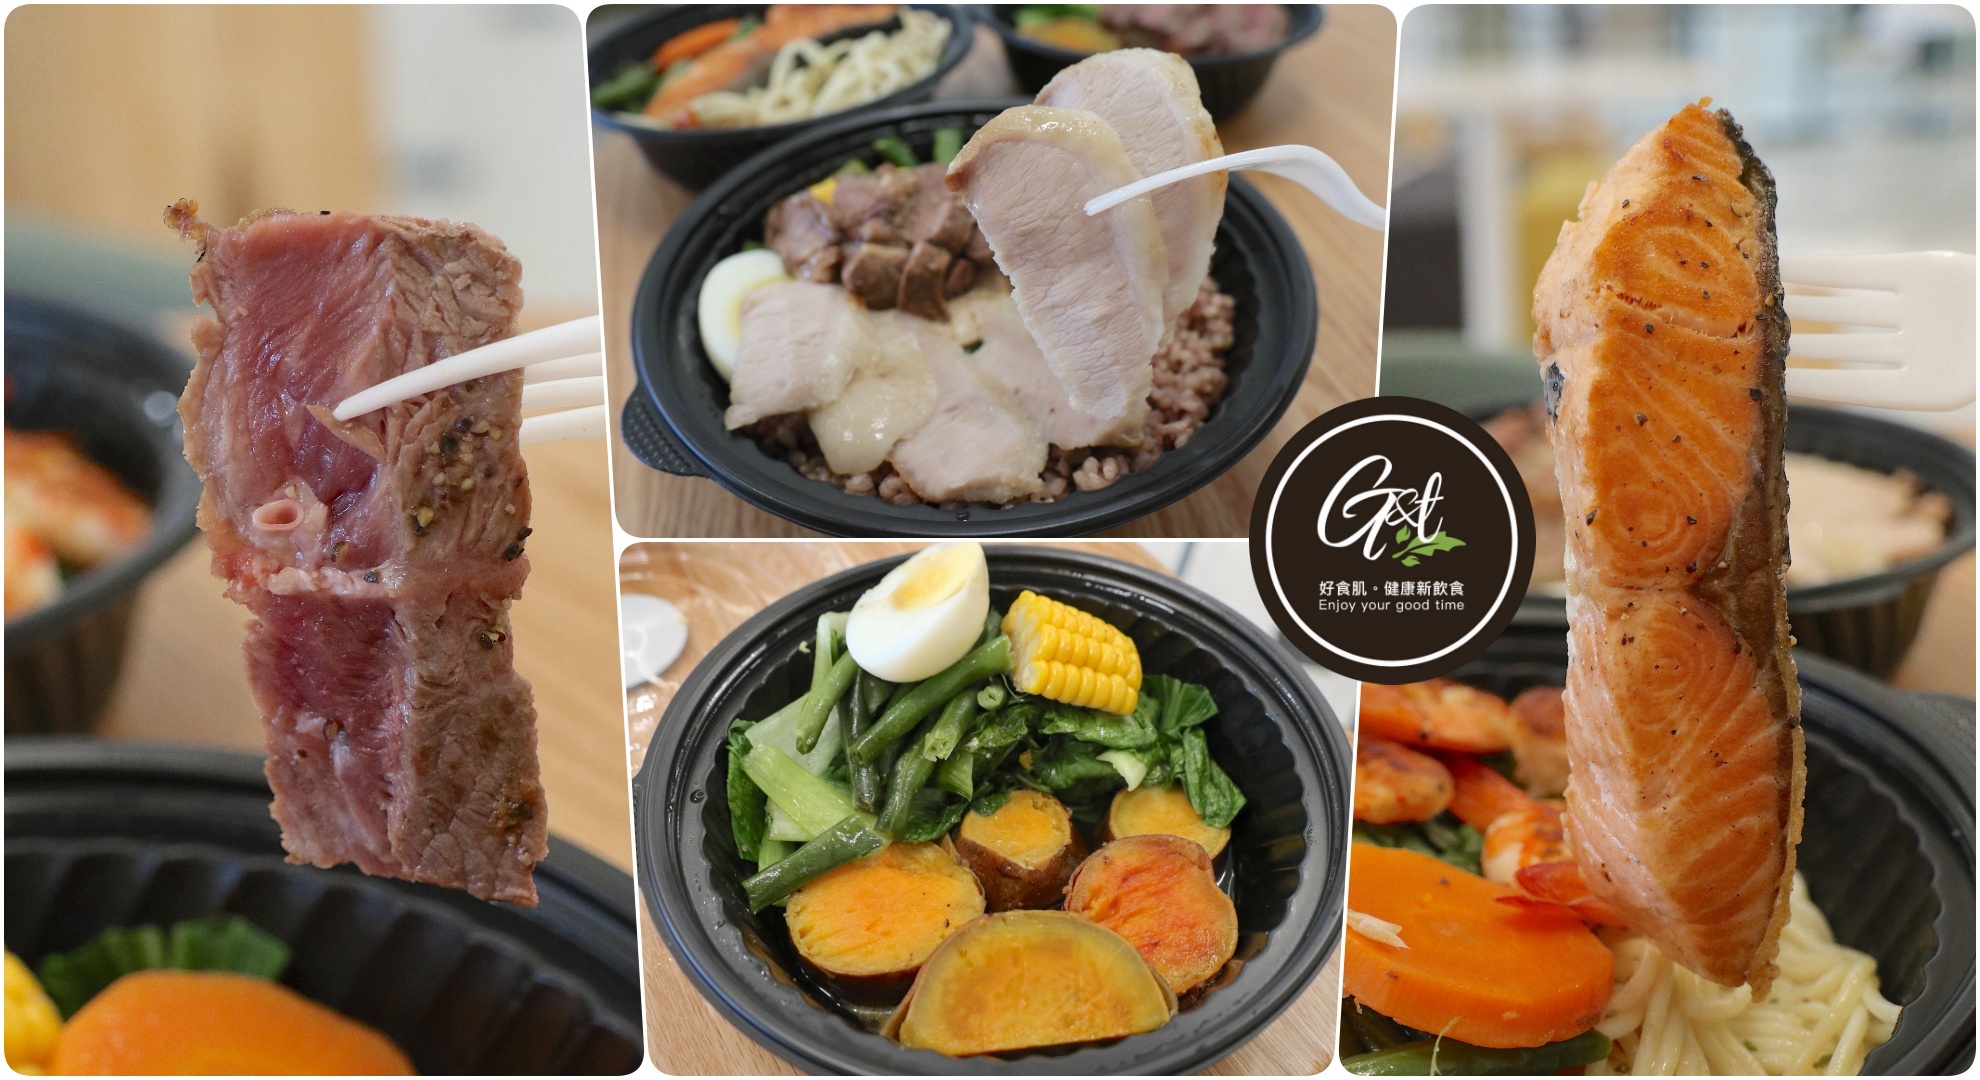 滿足五香豬腳,米其林,美食,豬腳,韓國,韓國旅行,首爾,首爾美食 @Helena's Blog